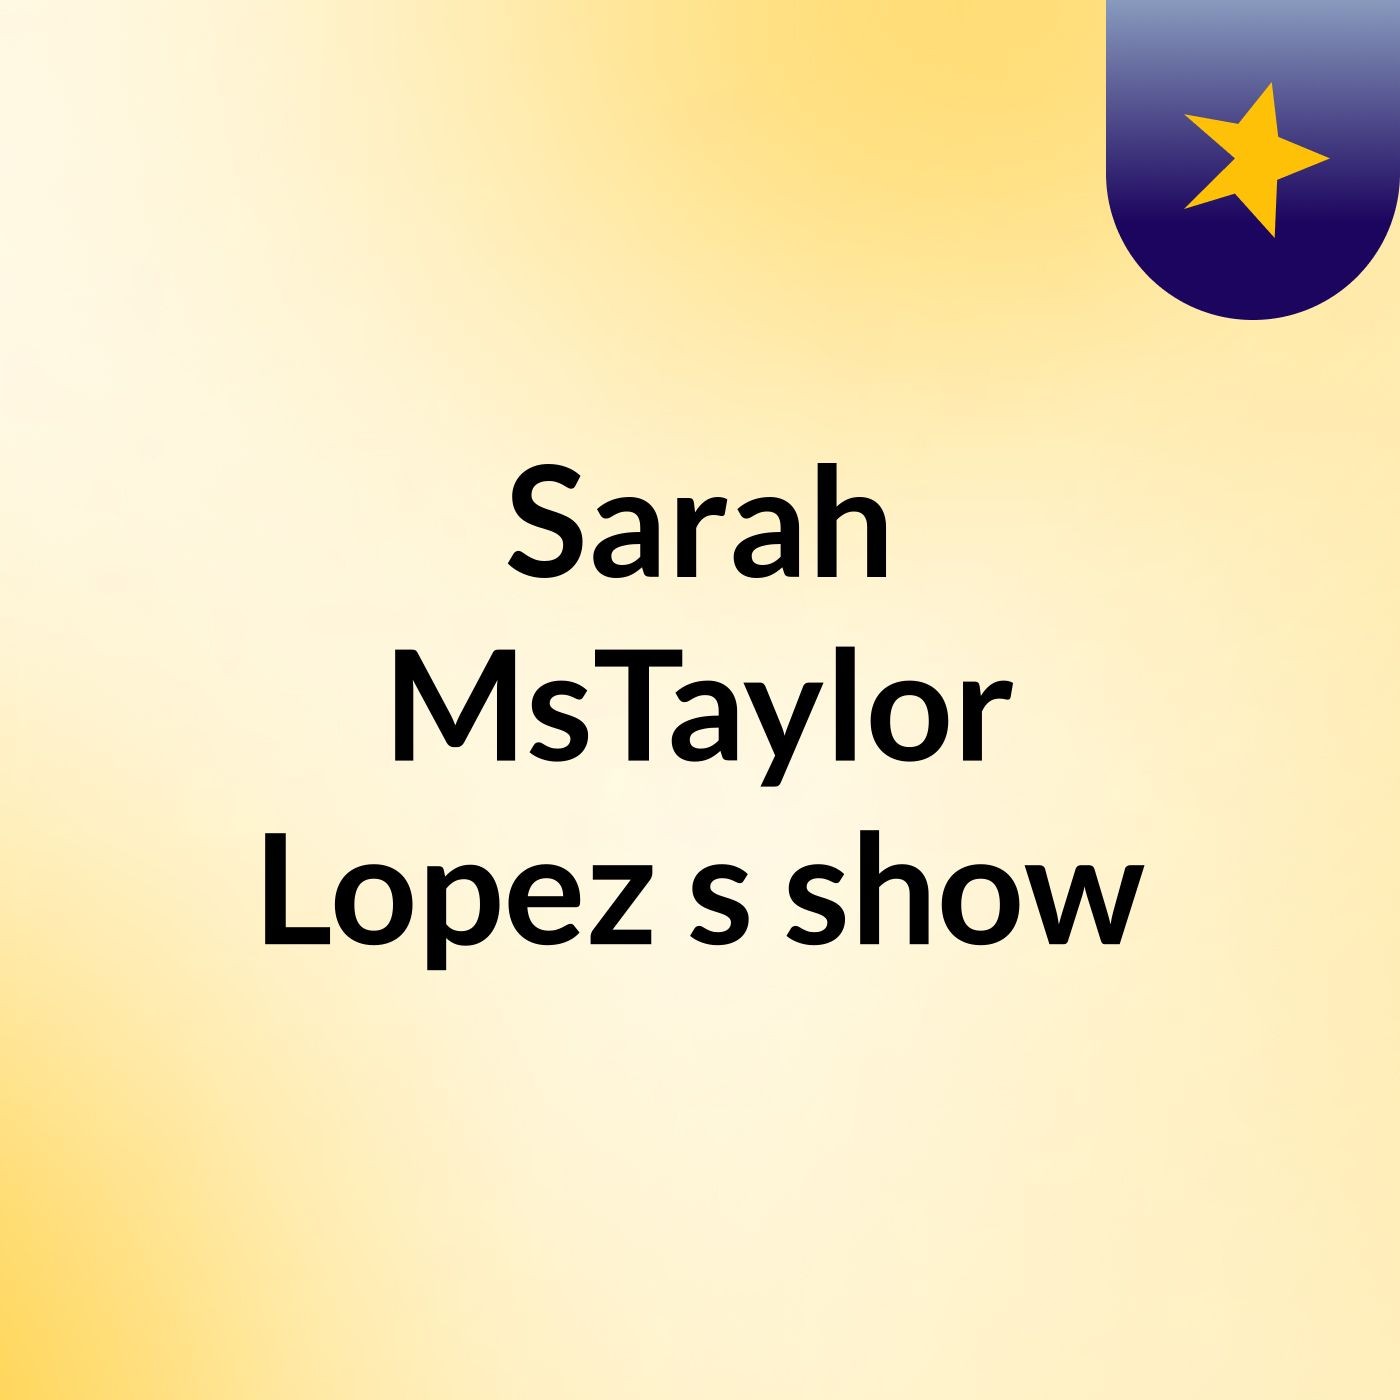 Sarah MsTaylor Lopez's show